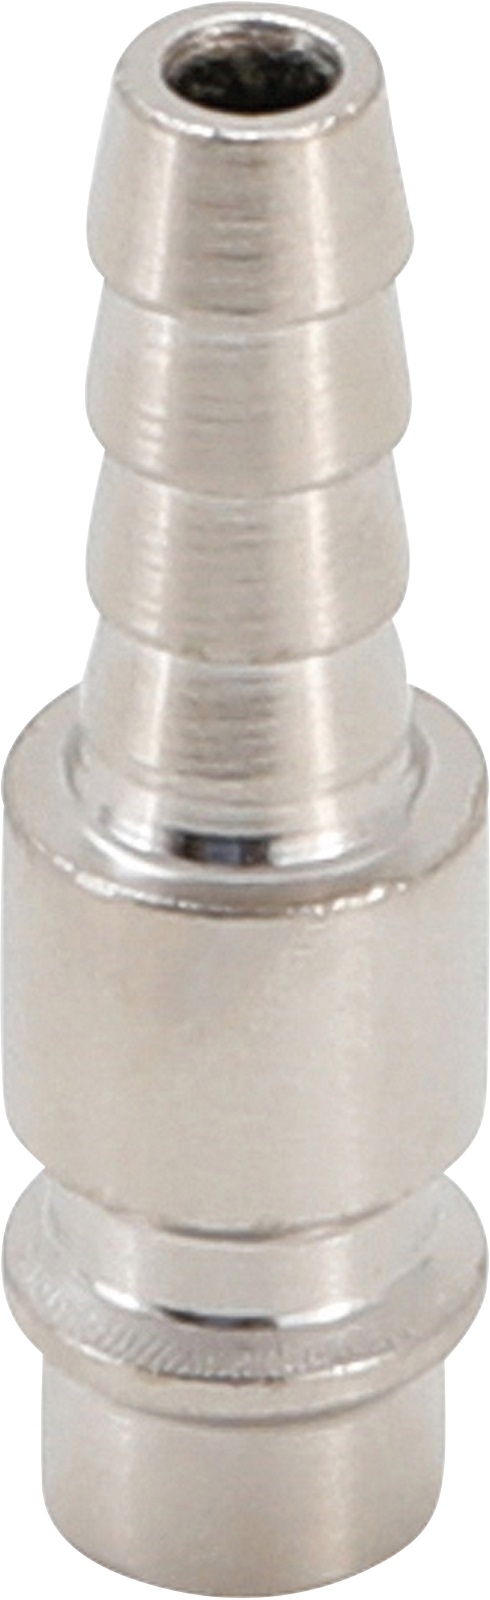 Druckluft-Stecknippel mit 8 mm Schlauchanschluss - BGS 3222-2